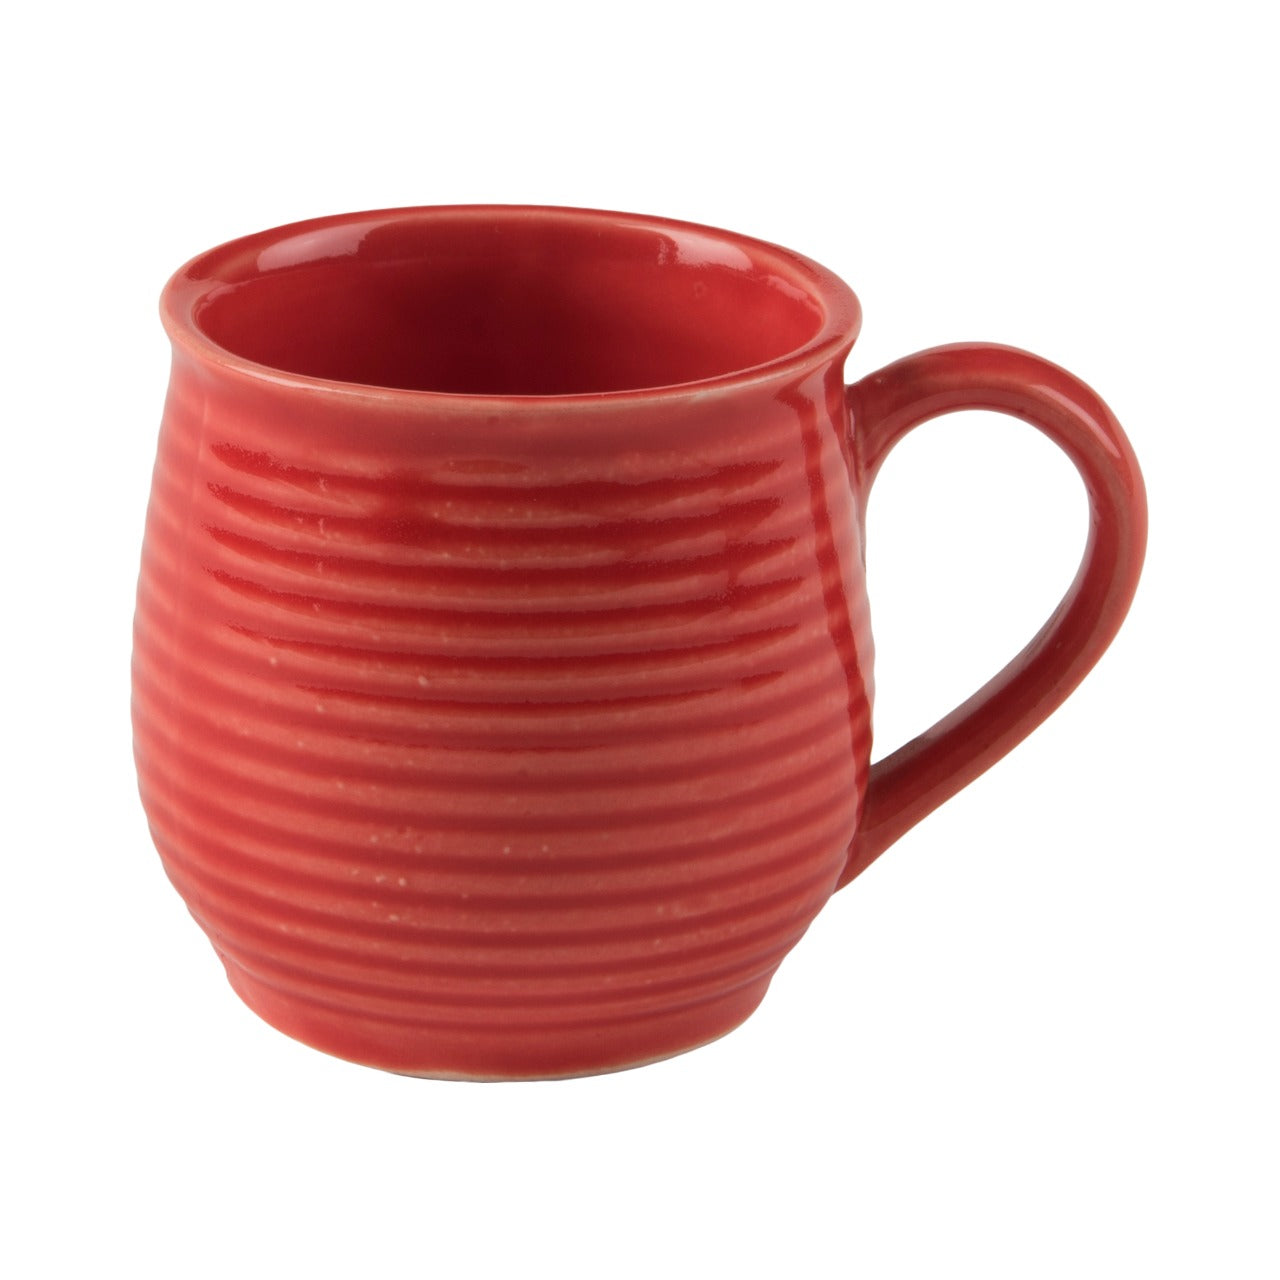 Red Tea Mug